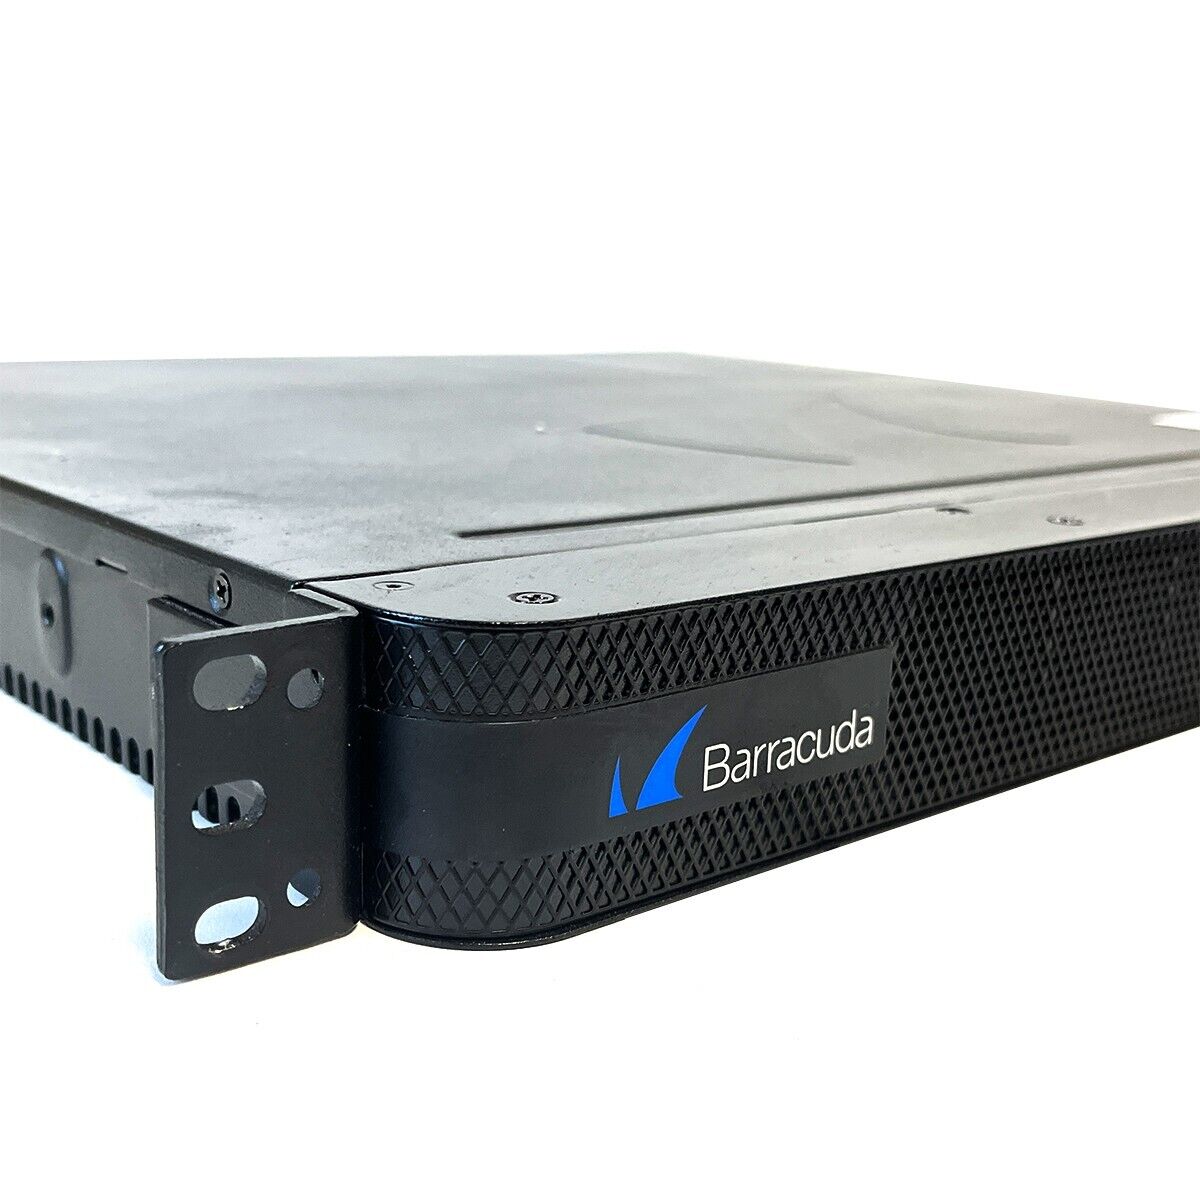 Barracuda Networks Spam Firewall 300 Model